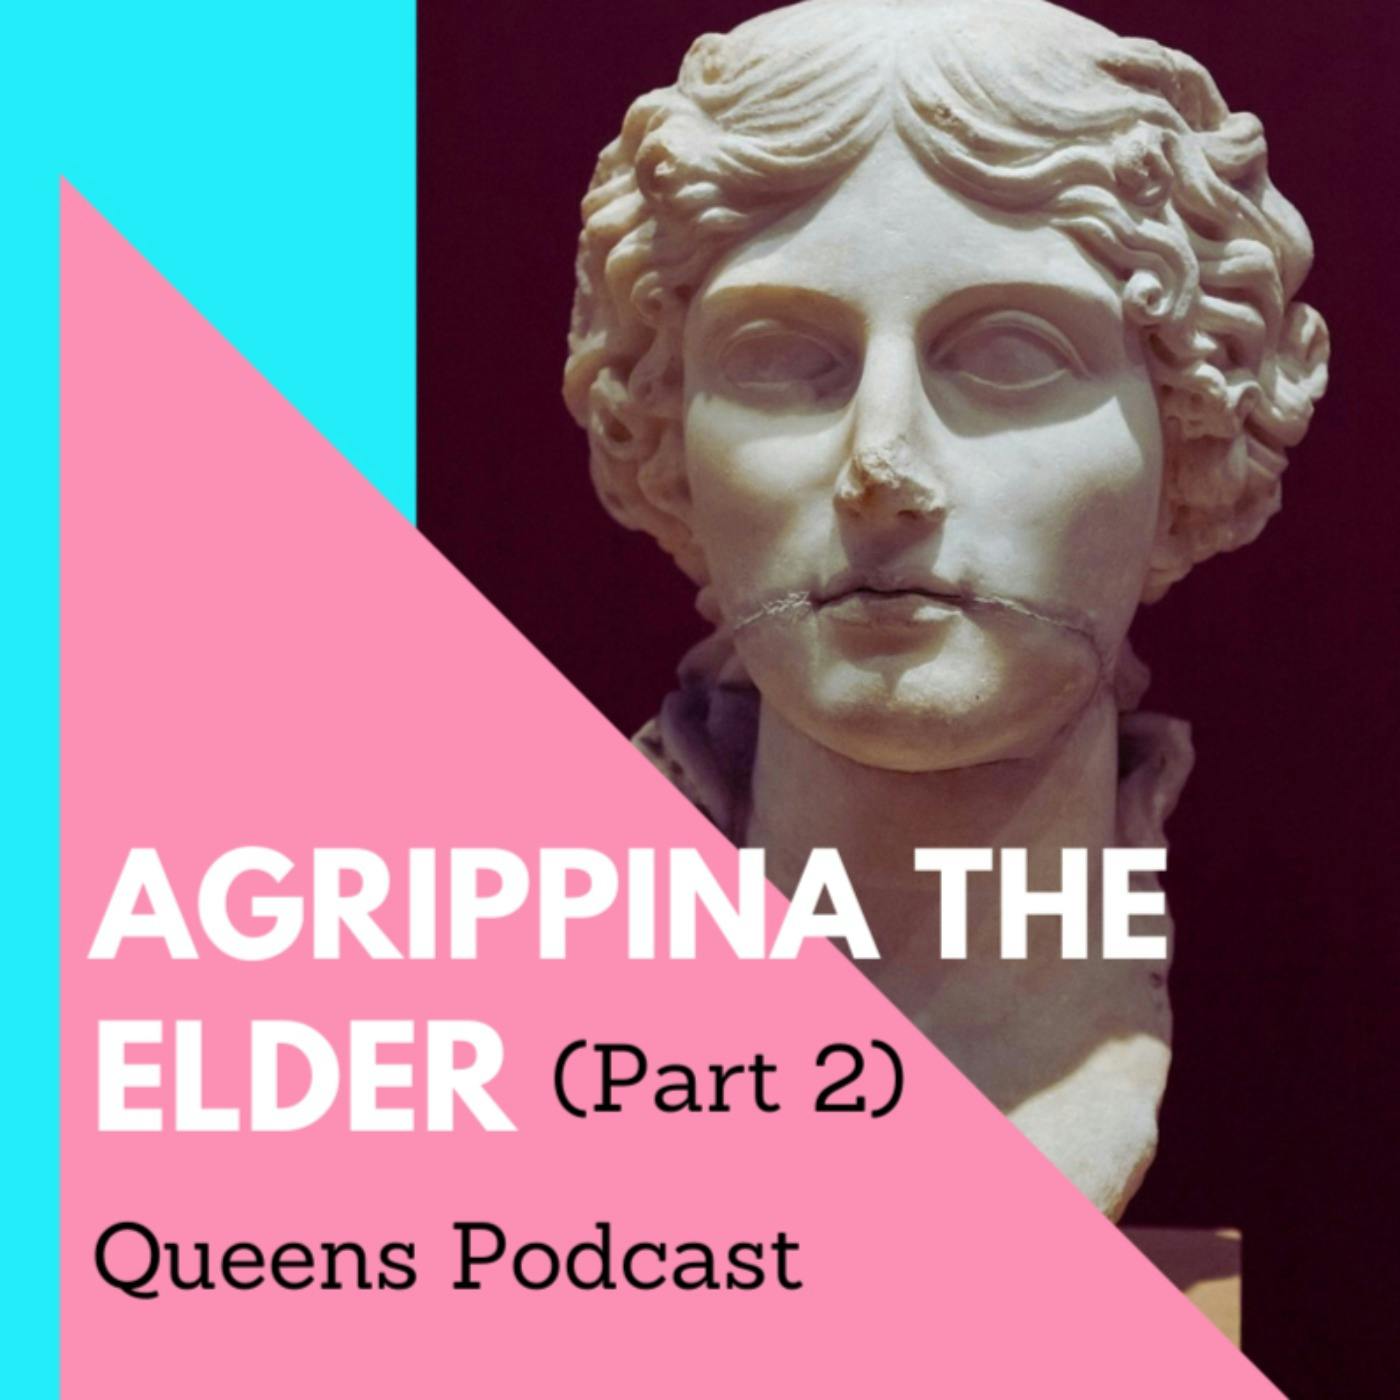 Agrippina the Elder part 2